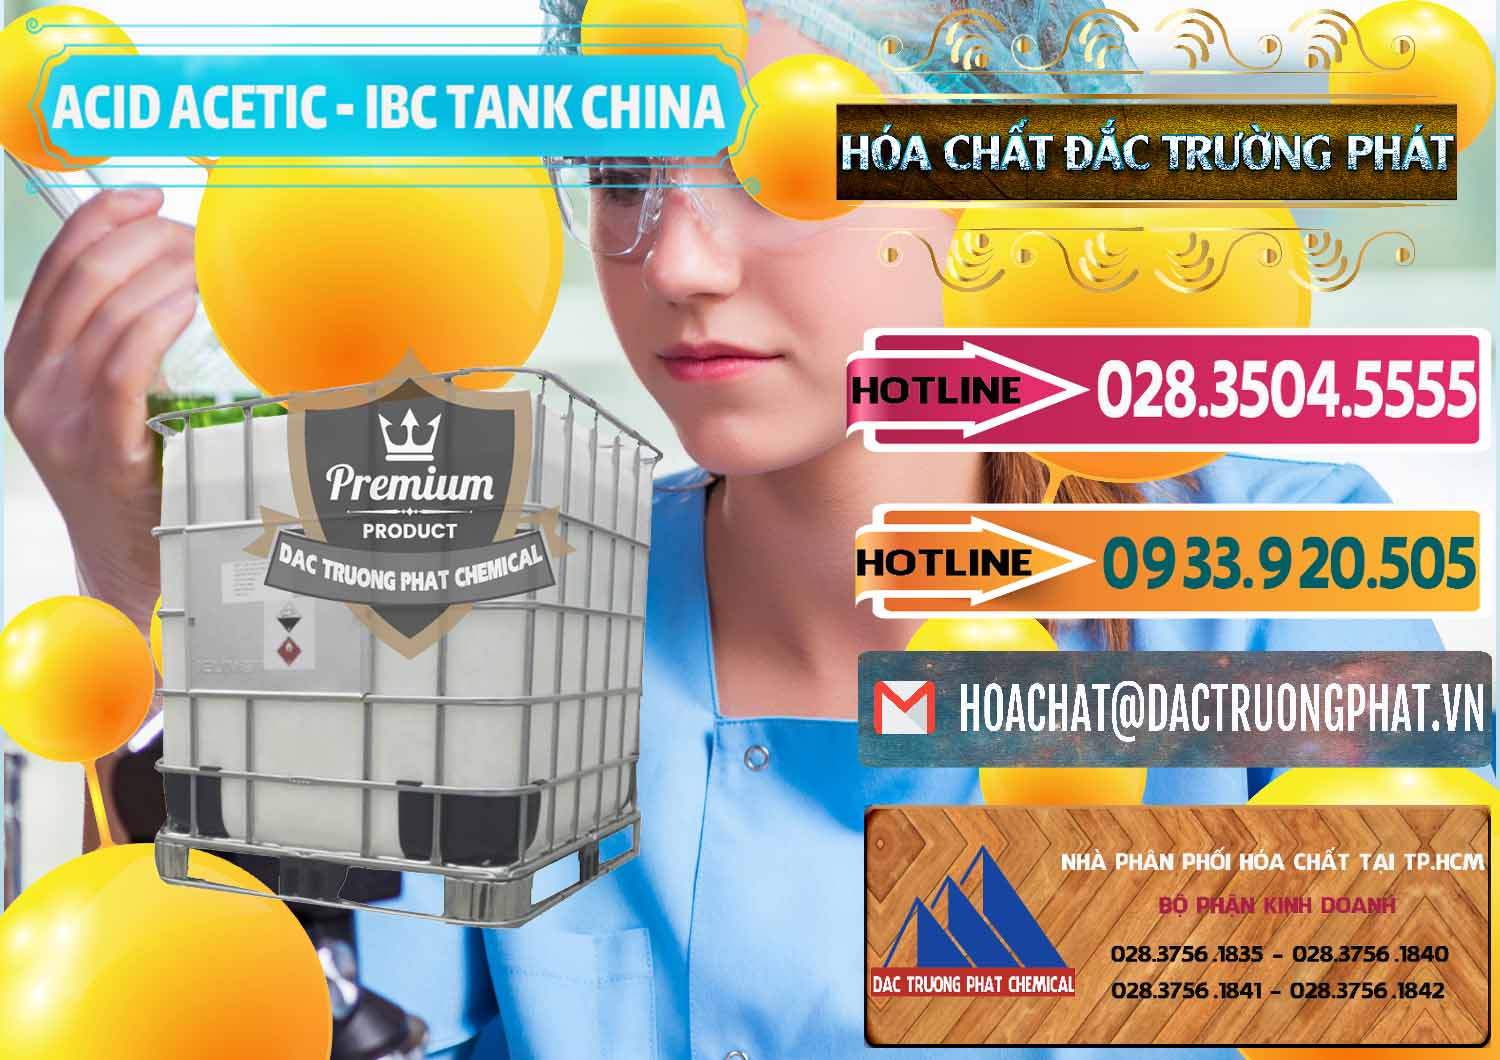 Công ty chuyên kinh doanh - bán Acetic Acid – Axit Acetic Tank Bồn IBC Trung Quốc China - 0443 - Nhà nhập khẩu - cung cấp hóa chất tại TP.HCM - dactruongphat.vn